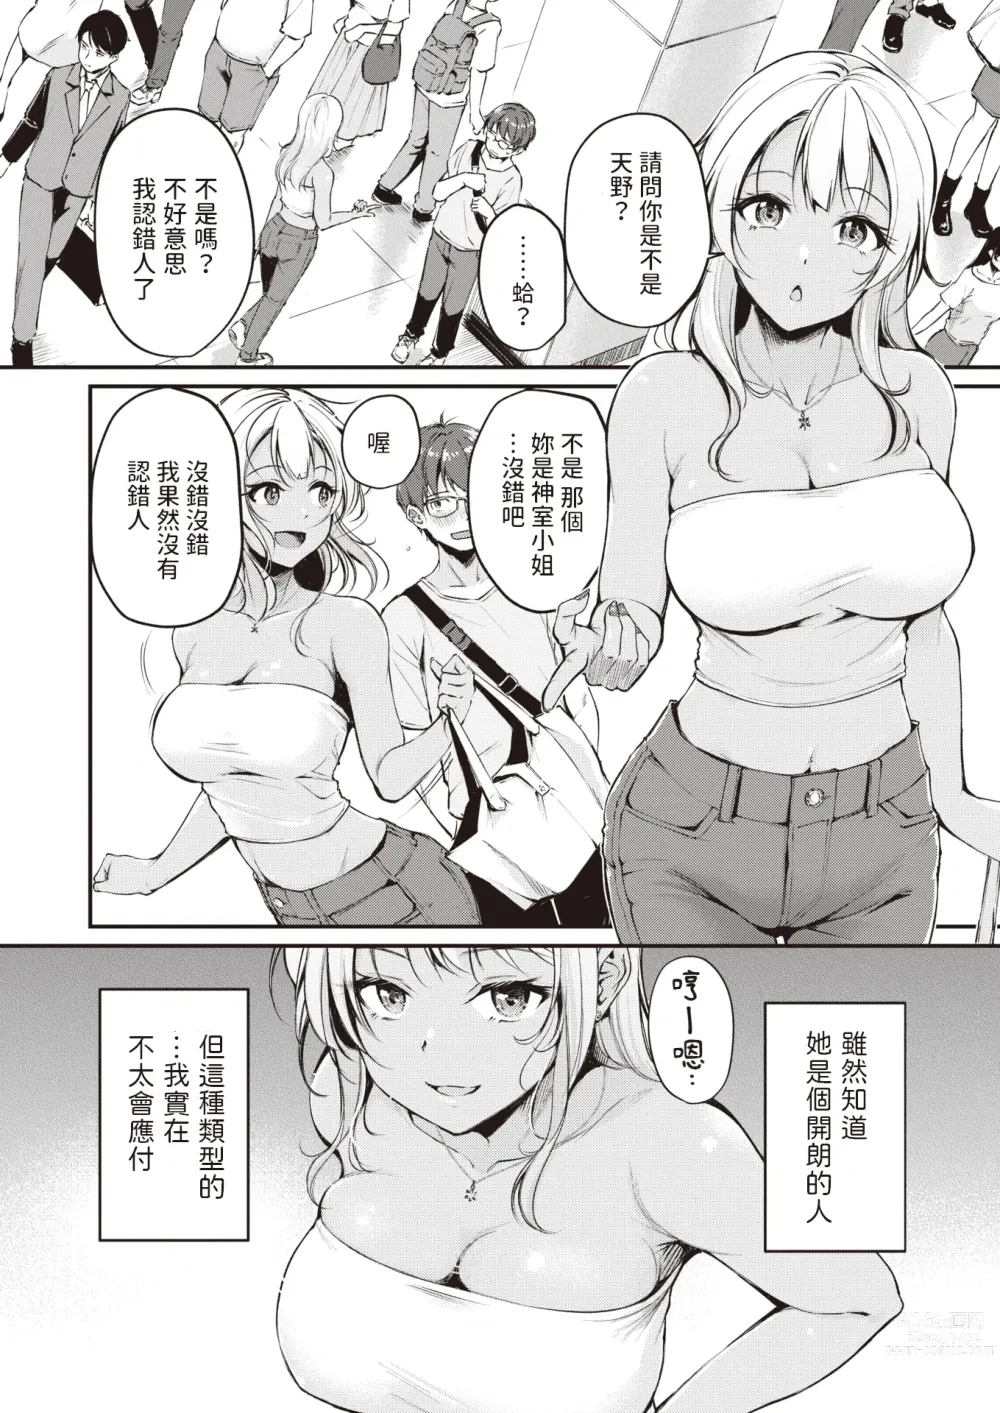 Page 2 of manga Tsumetai Kimi to Atsui Game o